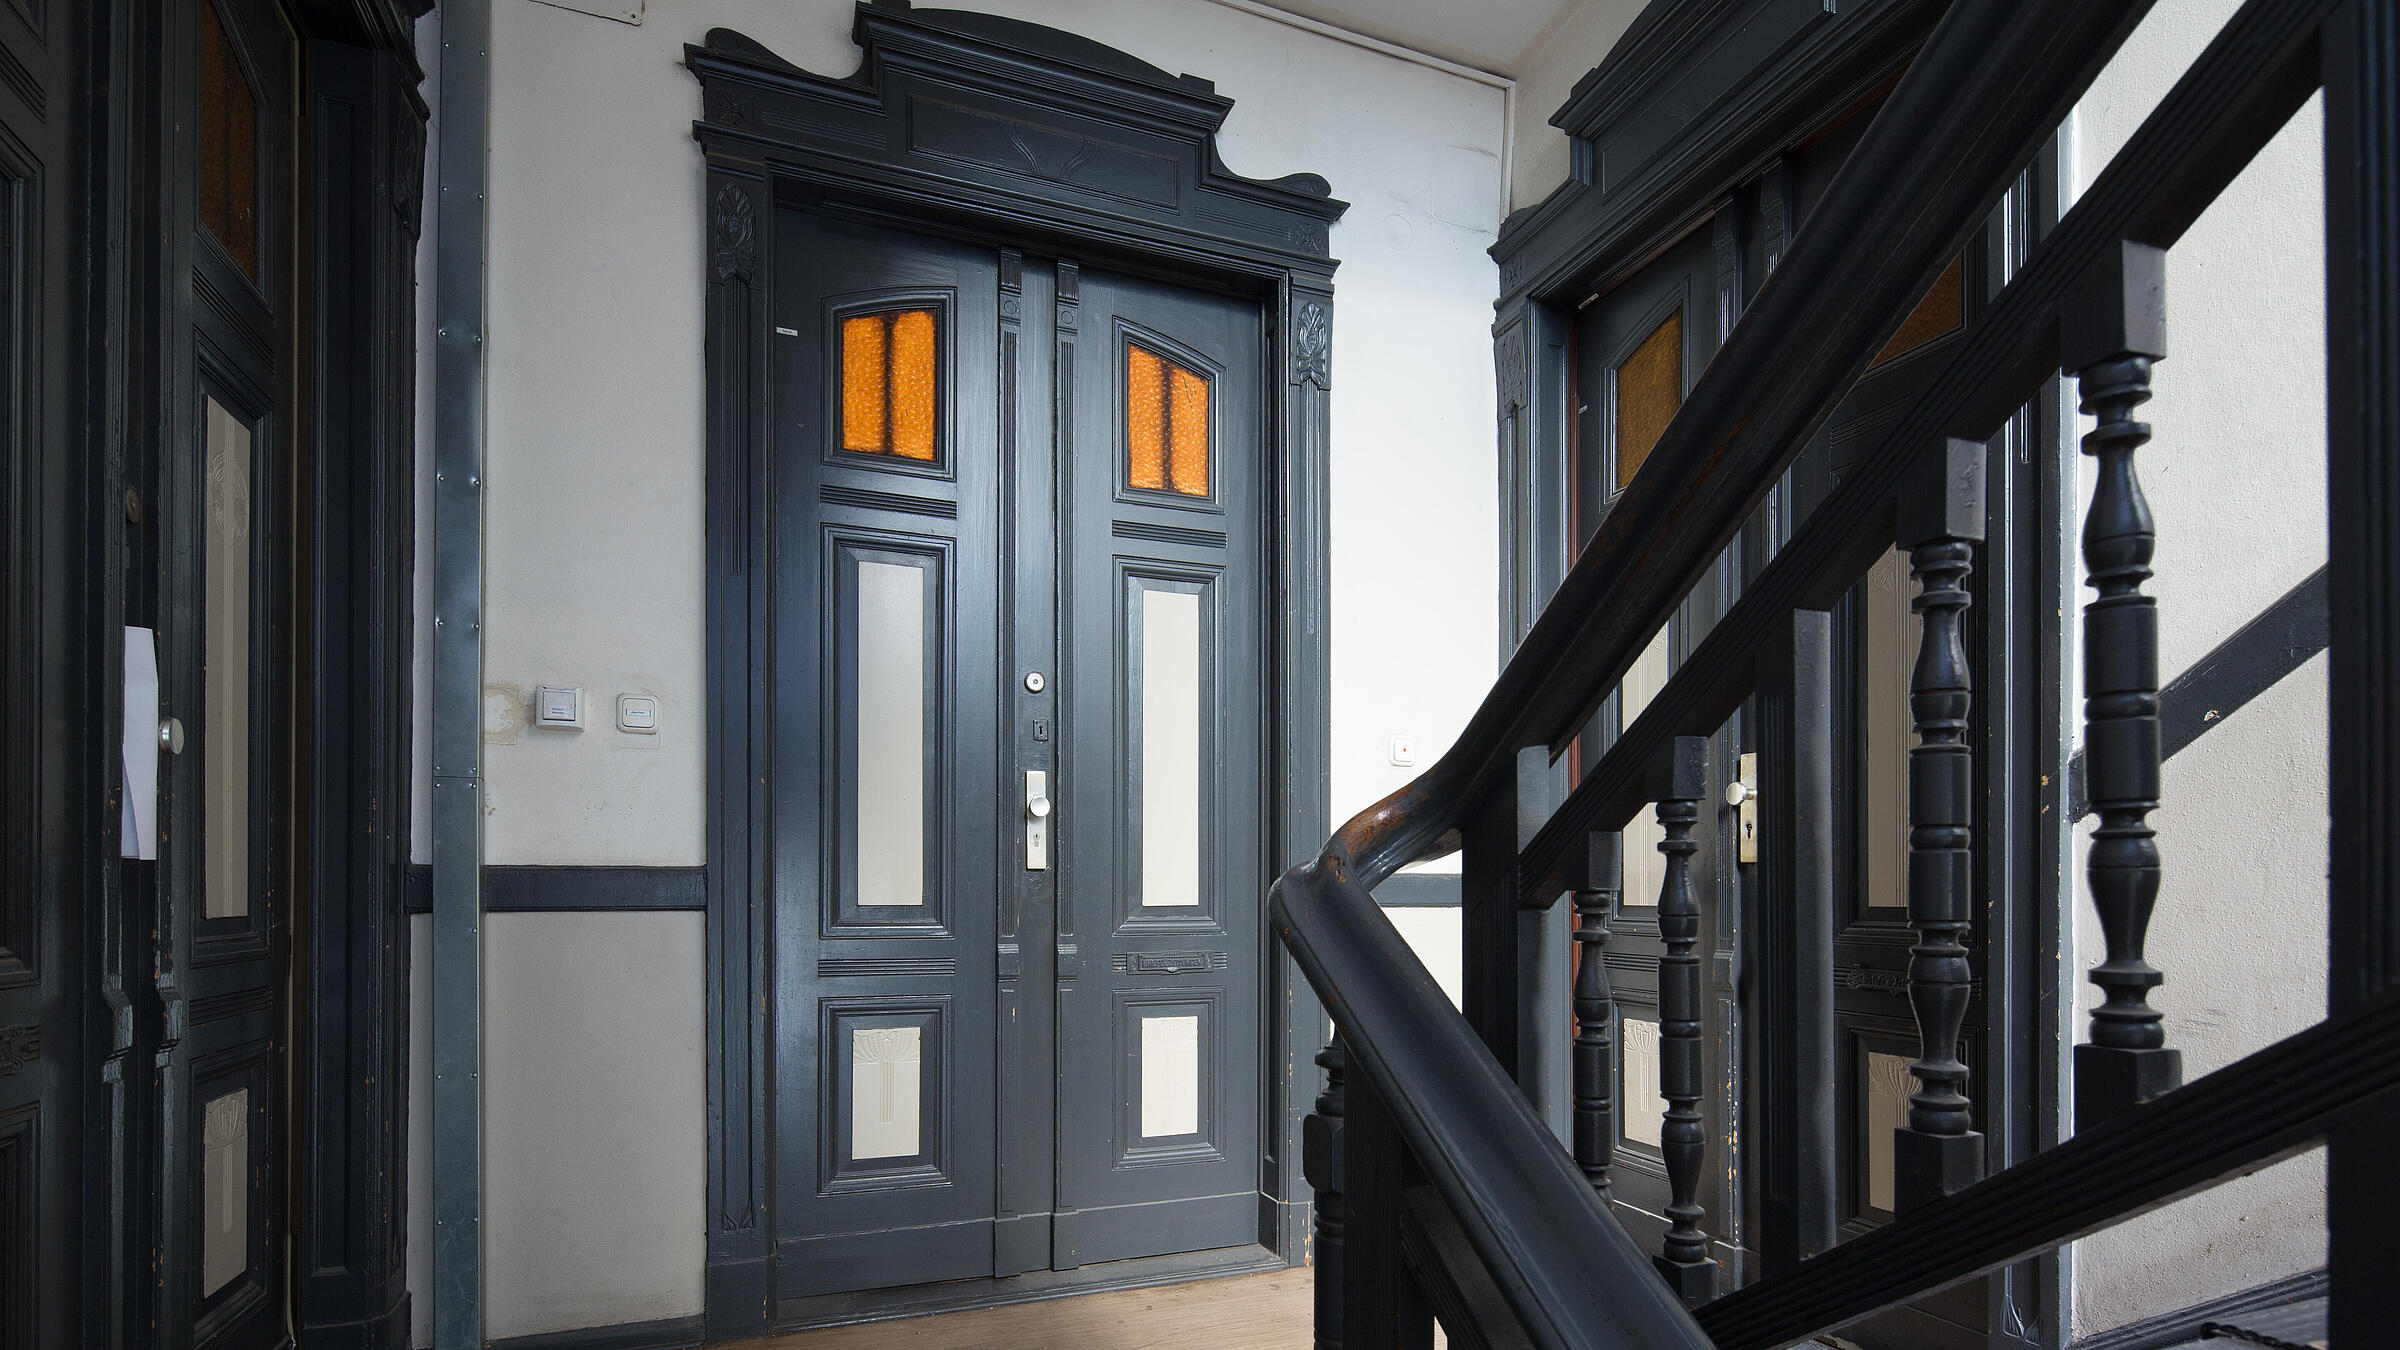 Innenaufnahme zeigt einen Treppenaufgang in der Luxemburger Straße von links die Treppe aufsteigend: Drei Wohnungen mit historisch verzierten Holzeingangstüren, die mittlere als Doppeltür öffnend.